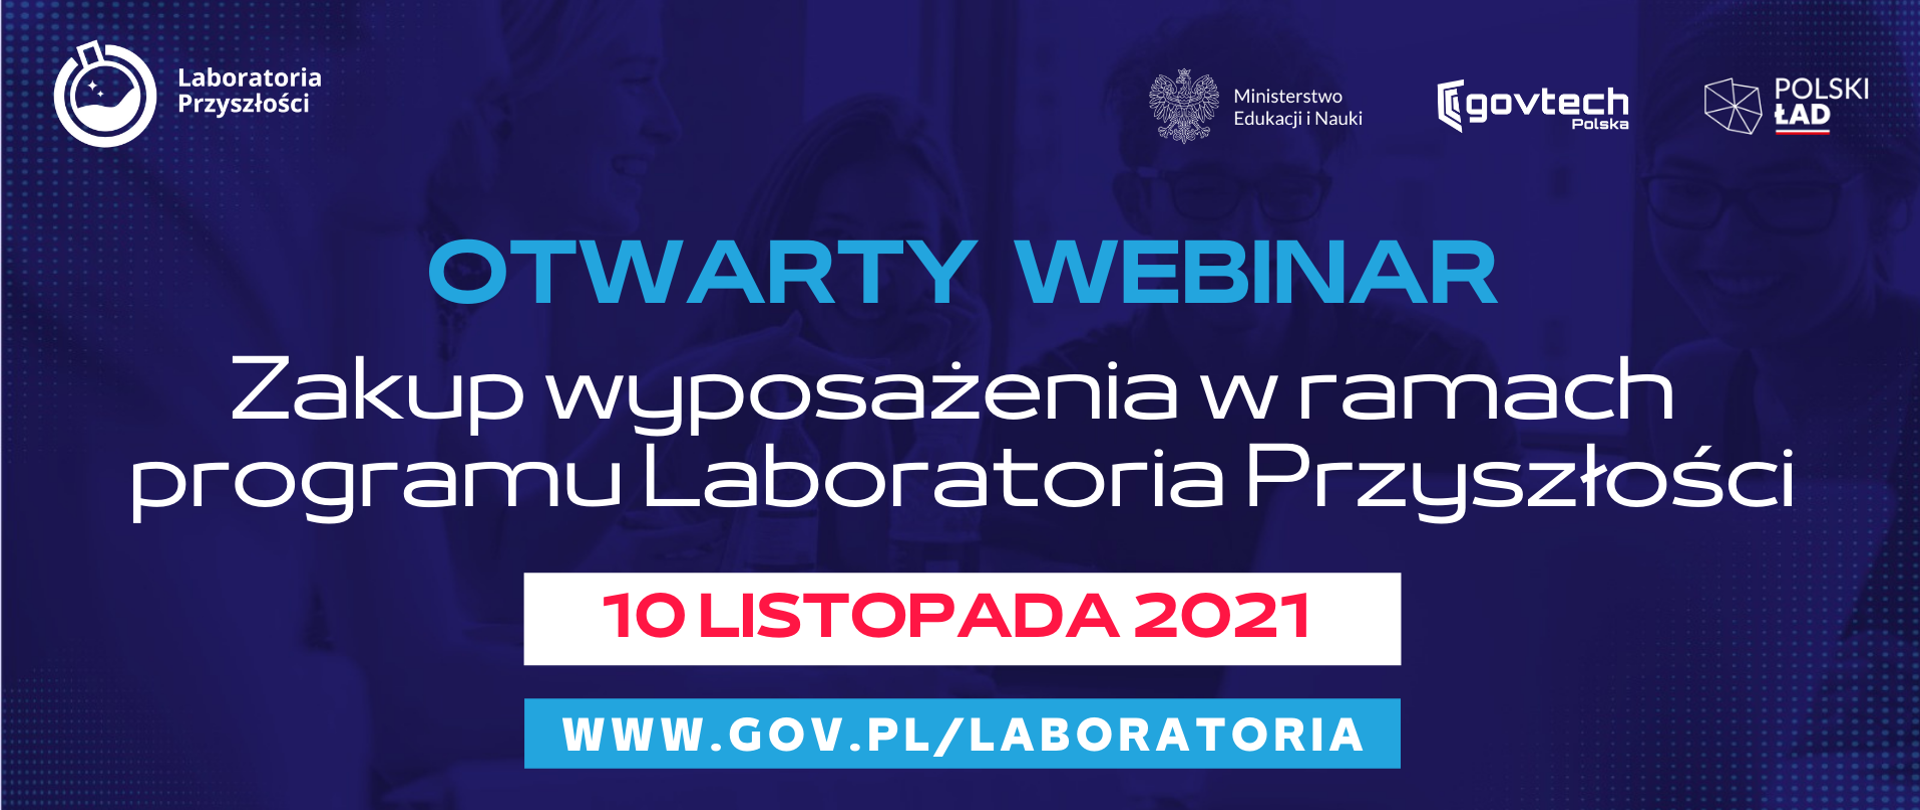 Otwarty webinar
Zakup wyposażenia w ramach programu Laboratoria Przyszłości
10 listopada 2021
www.gov.pl/laboratoria